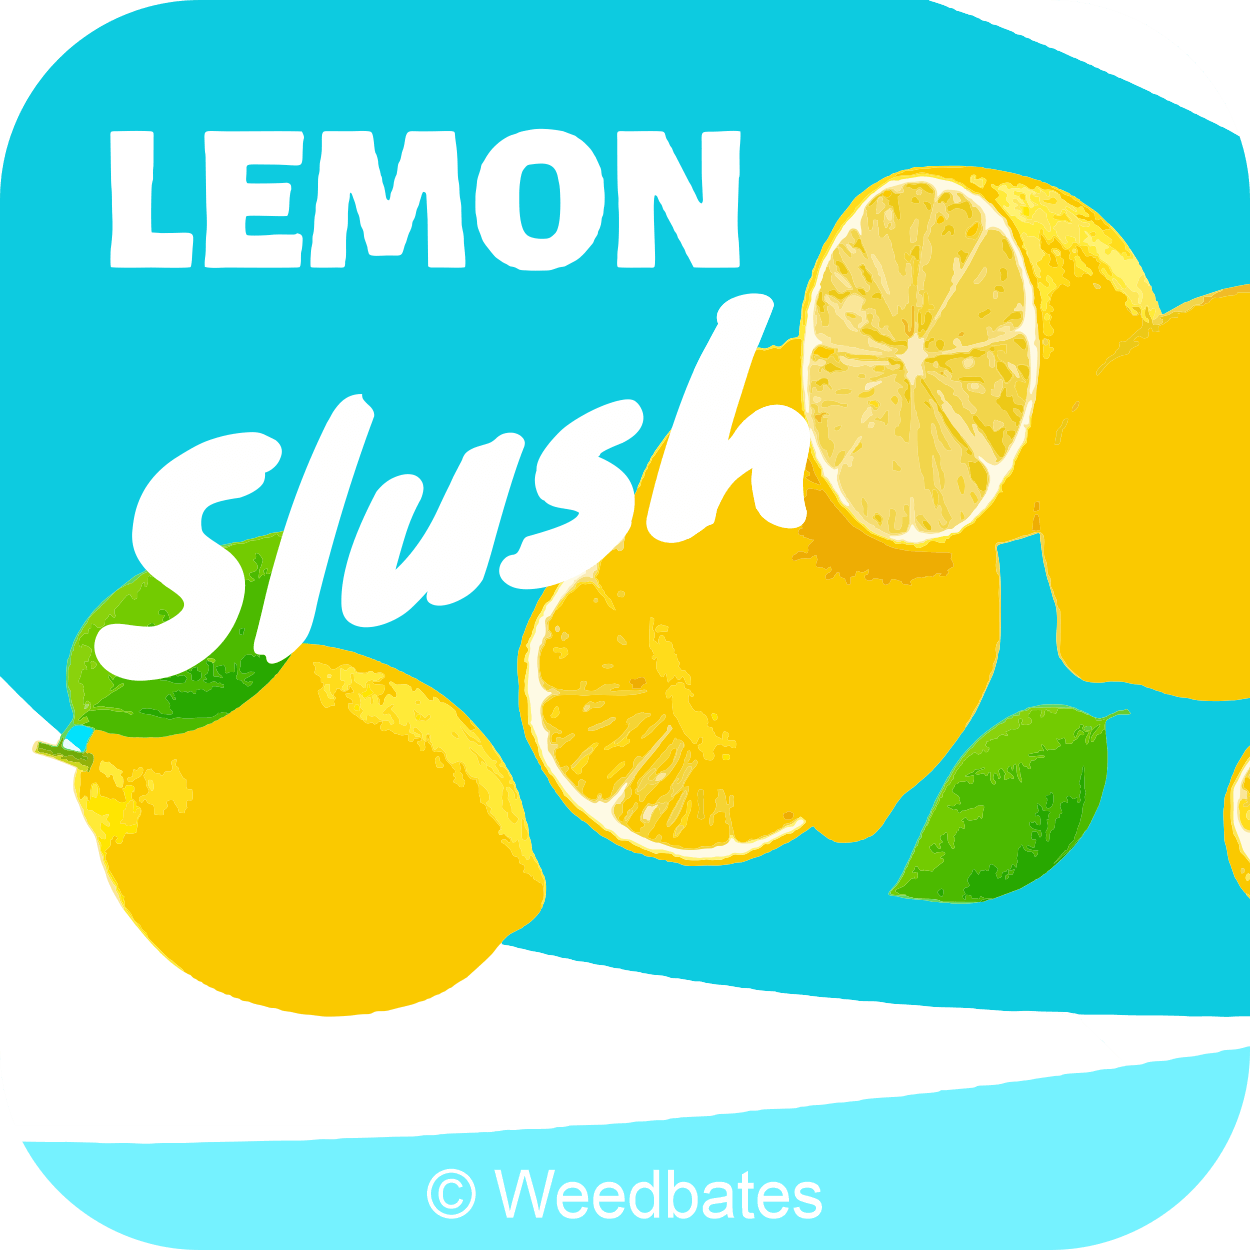 Lemon Slush strain